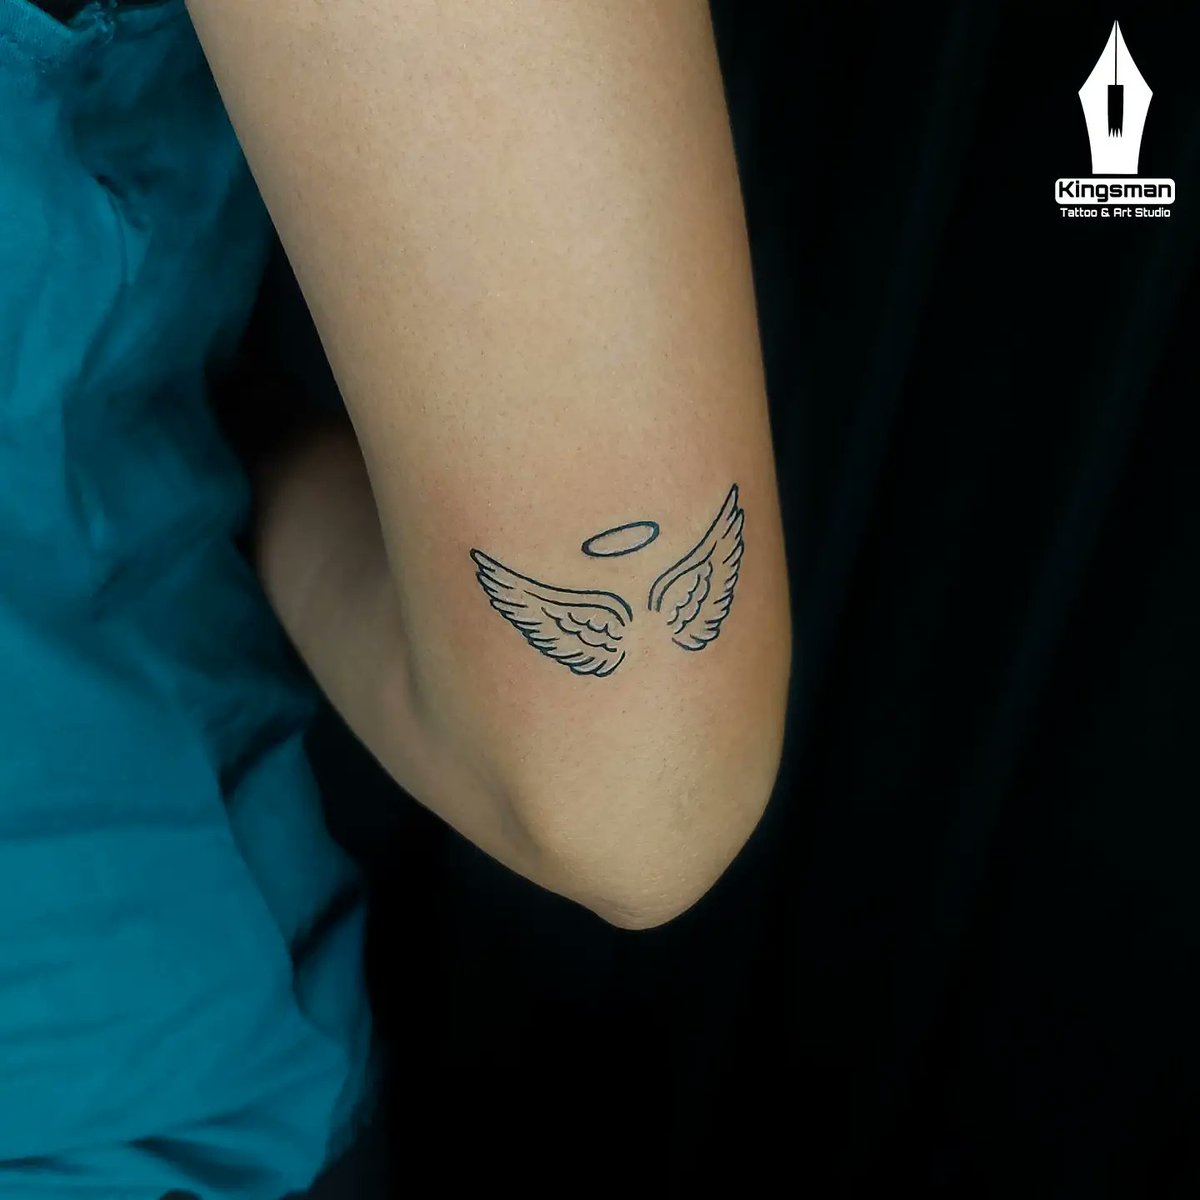 Ankle Tattoo Designs Small angel wing on ankle by Evan Weidner Angel ankle  Evan small weidner wi  Engel tattoo Engelsflügel tattoo Kleine  knöchel tattoos